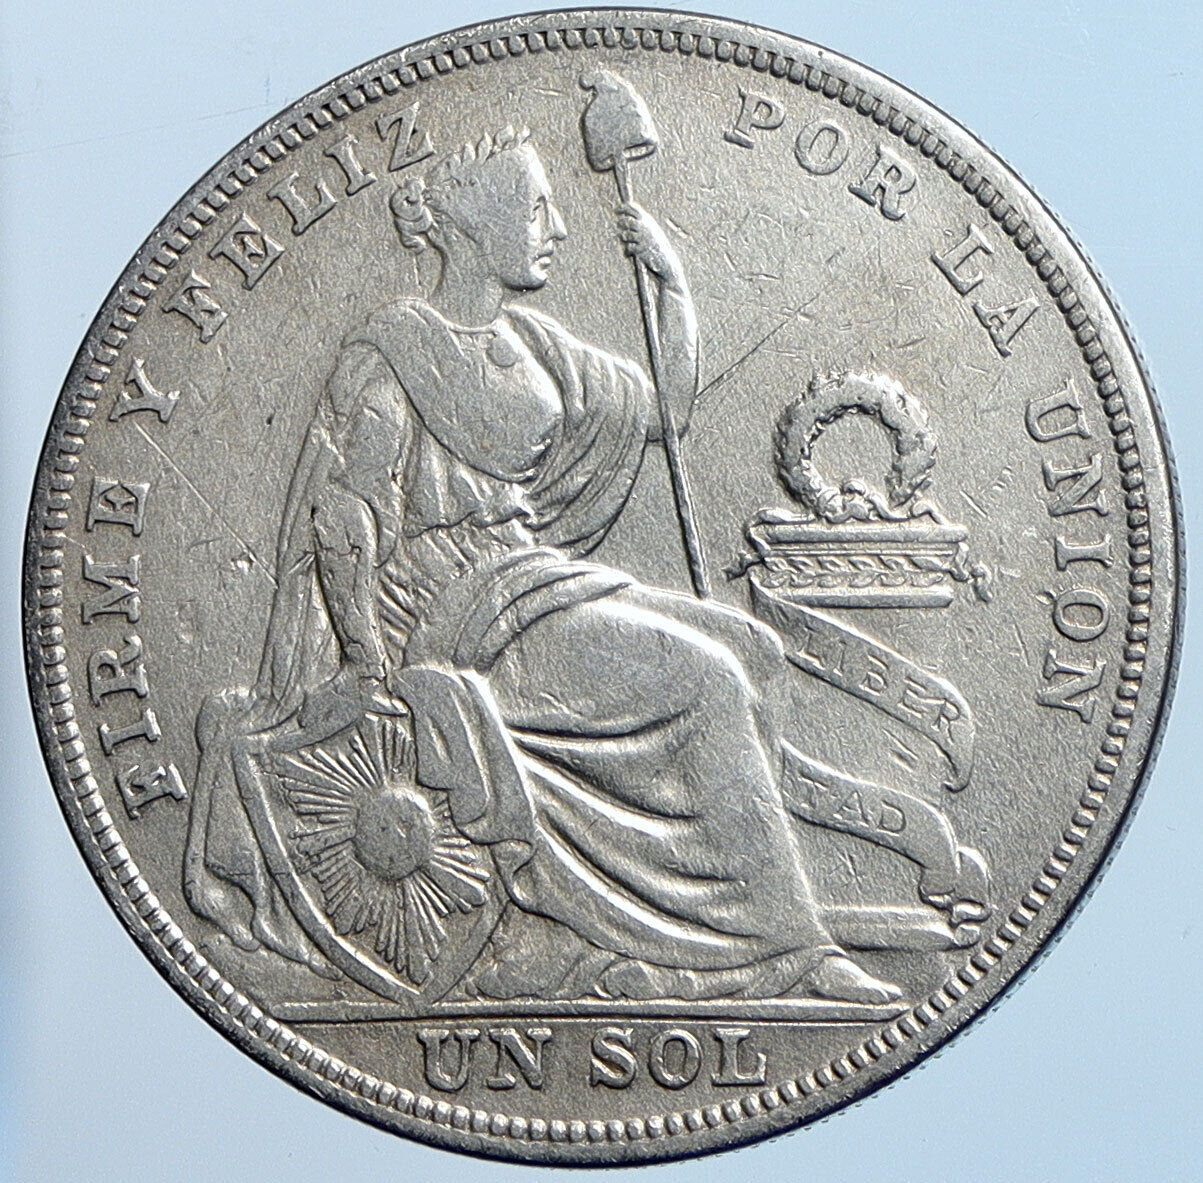 1924 PERU South America 1 SOL Antique BIG Original Silver Peruvian Coin i114549